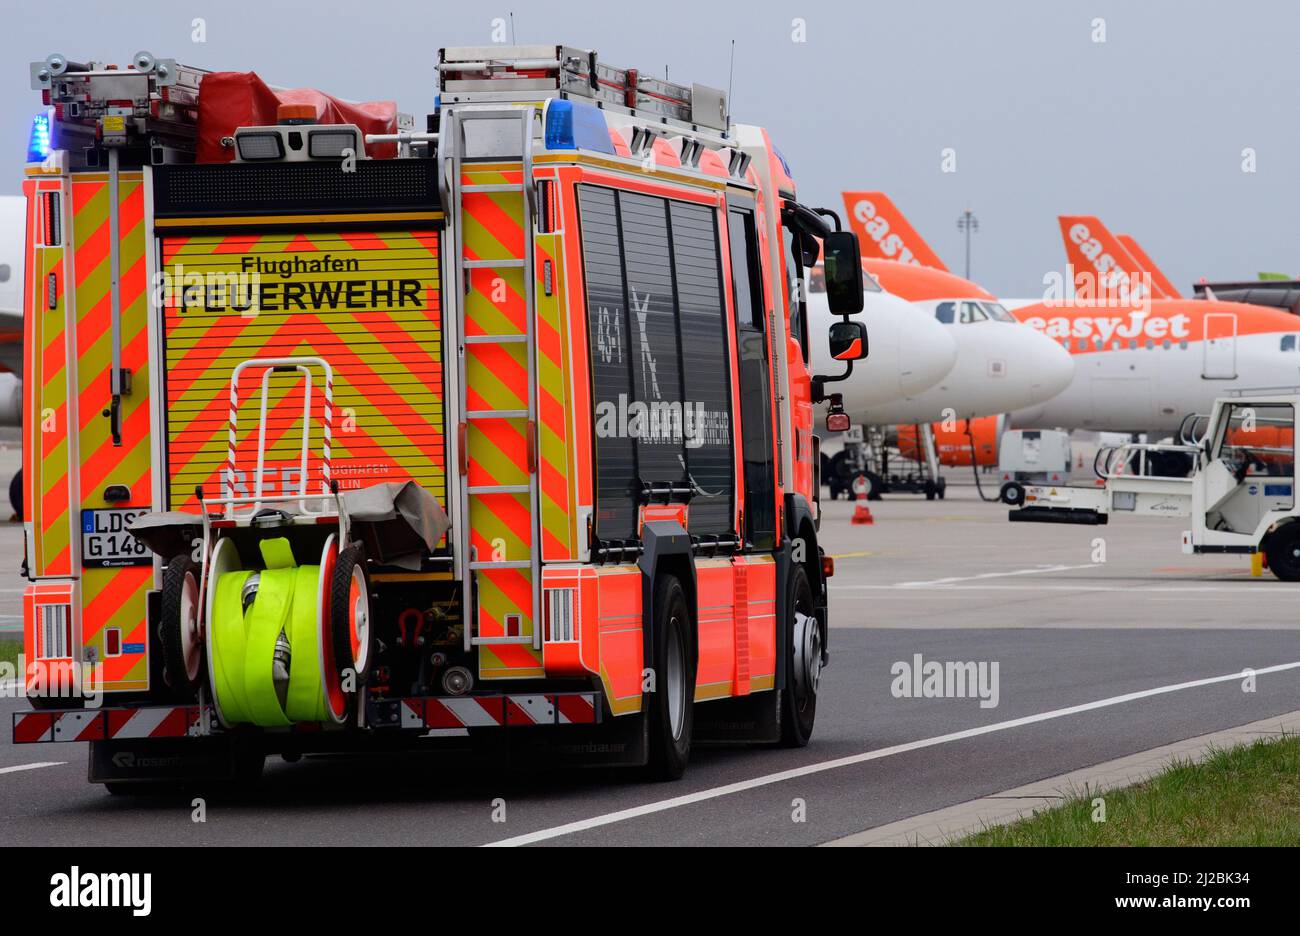 31 marzo 2022, Berlino, Schönefeld: Durante un evento stampa per l'inizio della formazione presso il reparto antincendio dell'aeroporto, un veicolo ausiliario del gruppo antincendio (HLF) guida gli aerei in attesa attraverso i terreni dell'aeroporto a scopo dimostrativo. Il veicolo differisce da un normale camion dei pompieri per il fatto che dispone di attrezzature più estese per l'assistenza tecnica. A partire da agosto 2022, il reparto antincendio del sito di BER offrirà formazione per diventare un pompiere. All'inizio devono essere occupate sei posizioni apprendisti. Foto: Soeren Stache/dpa-Zentralbild/dpa Foto Stock